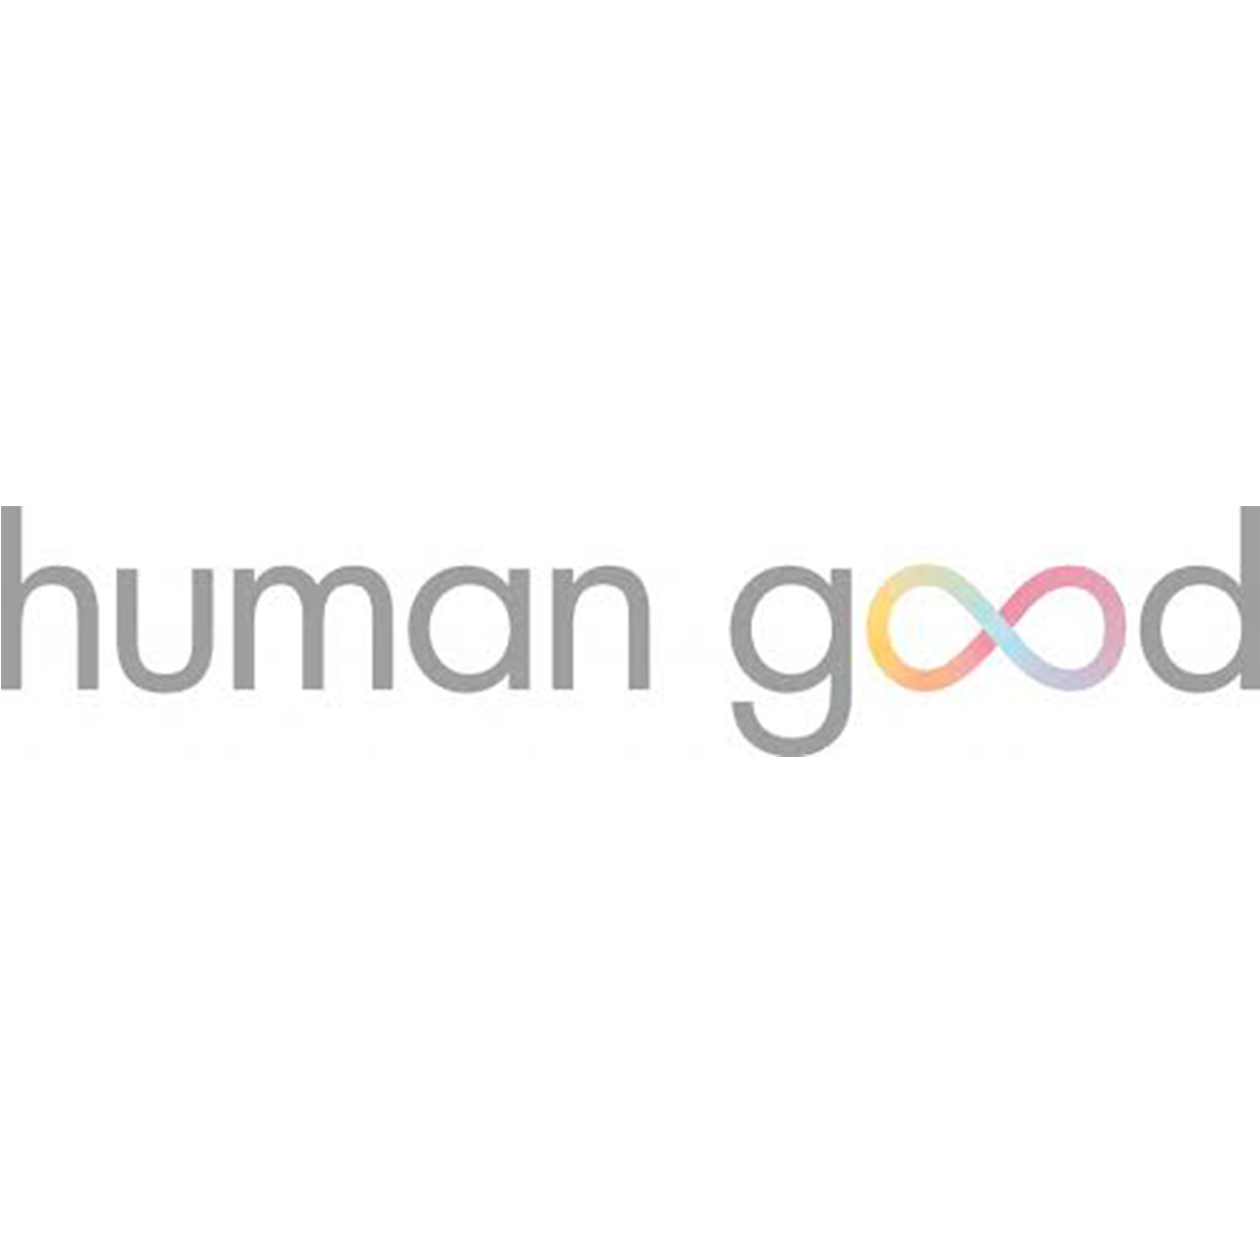 Human Good logo